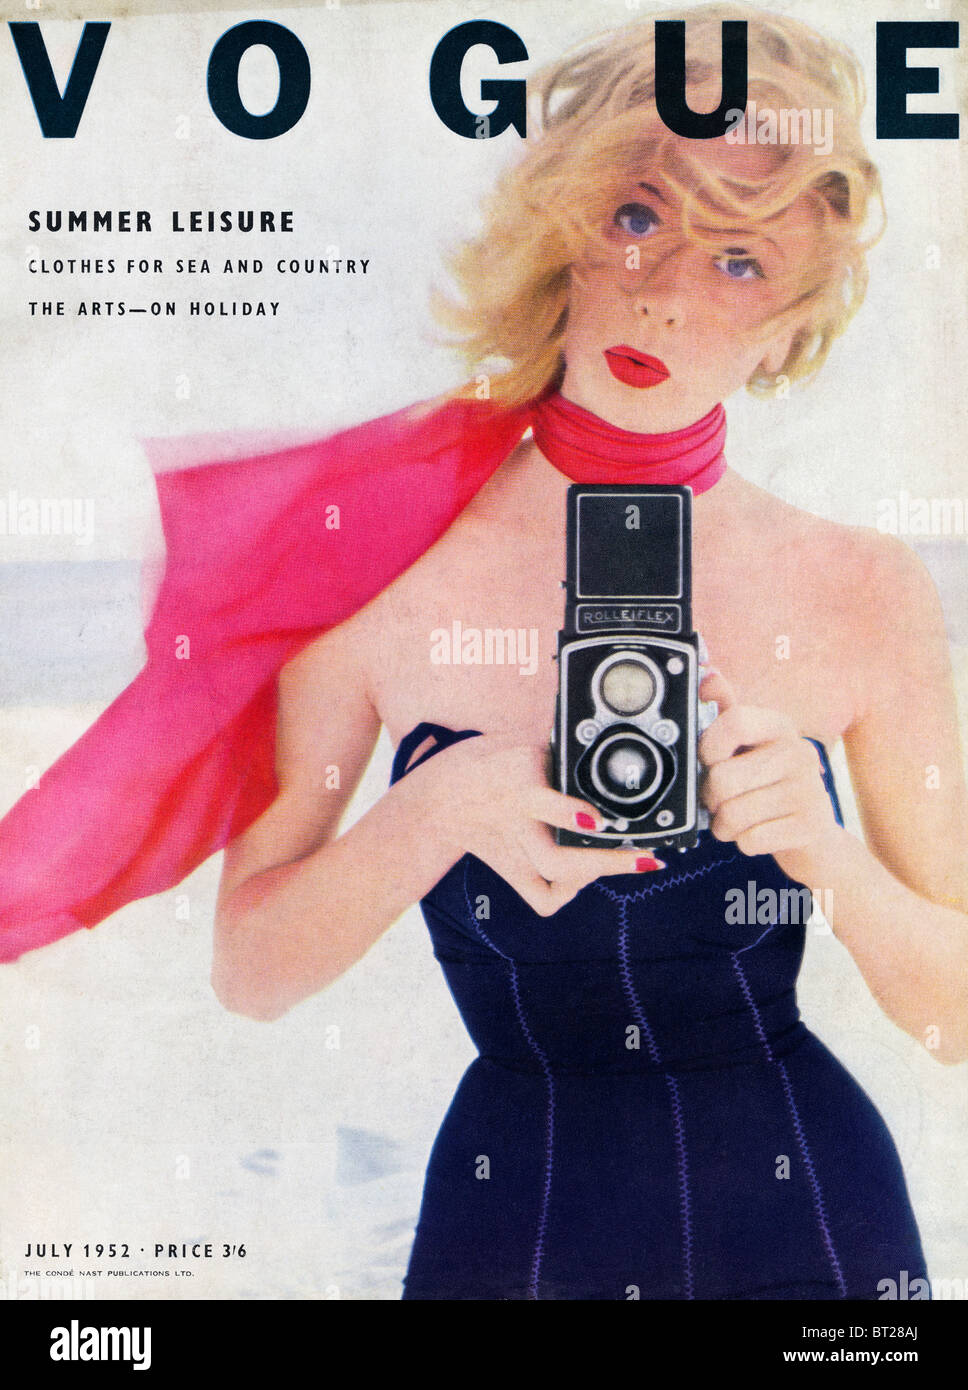 Portada de revista de moda VOGUE Julio 1952 fotografiada por Irving Penn al precio de 3 chelines y 6 peniques Foto de stock